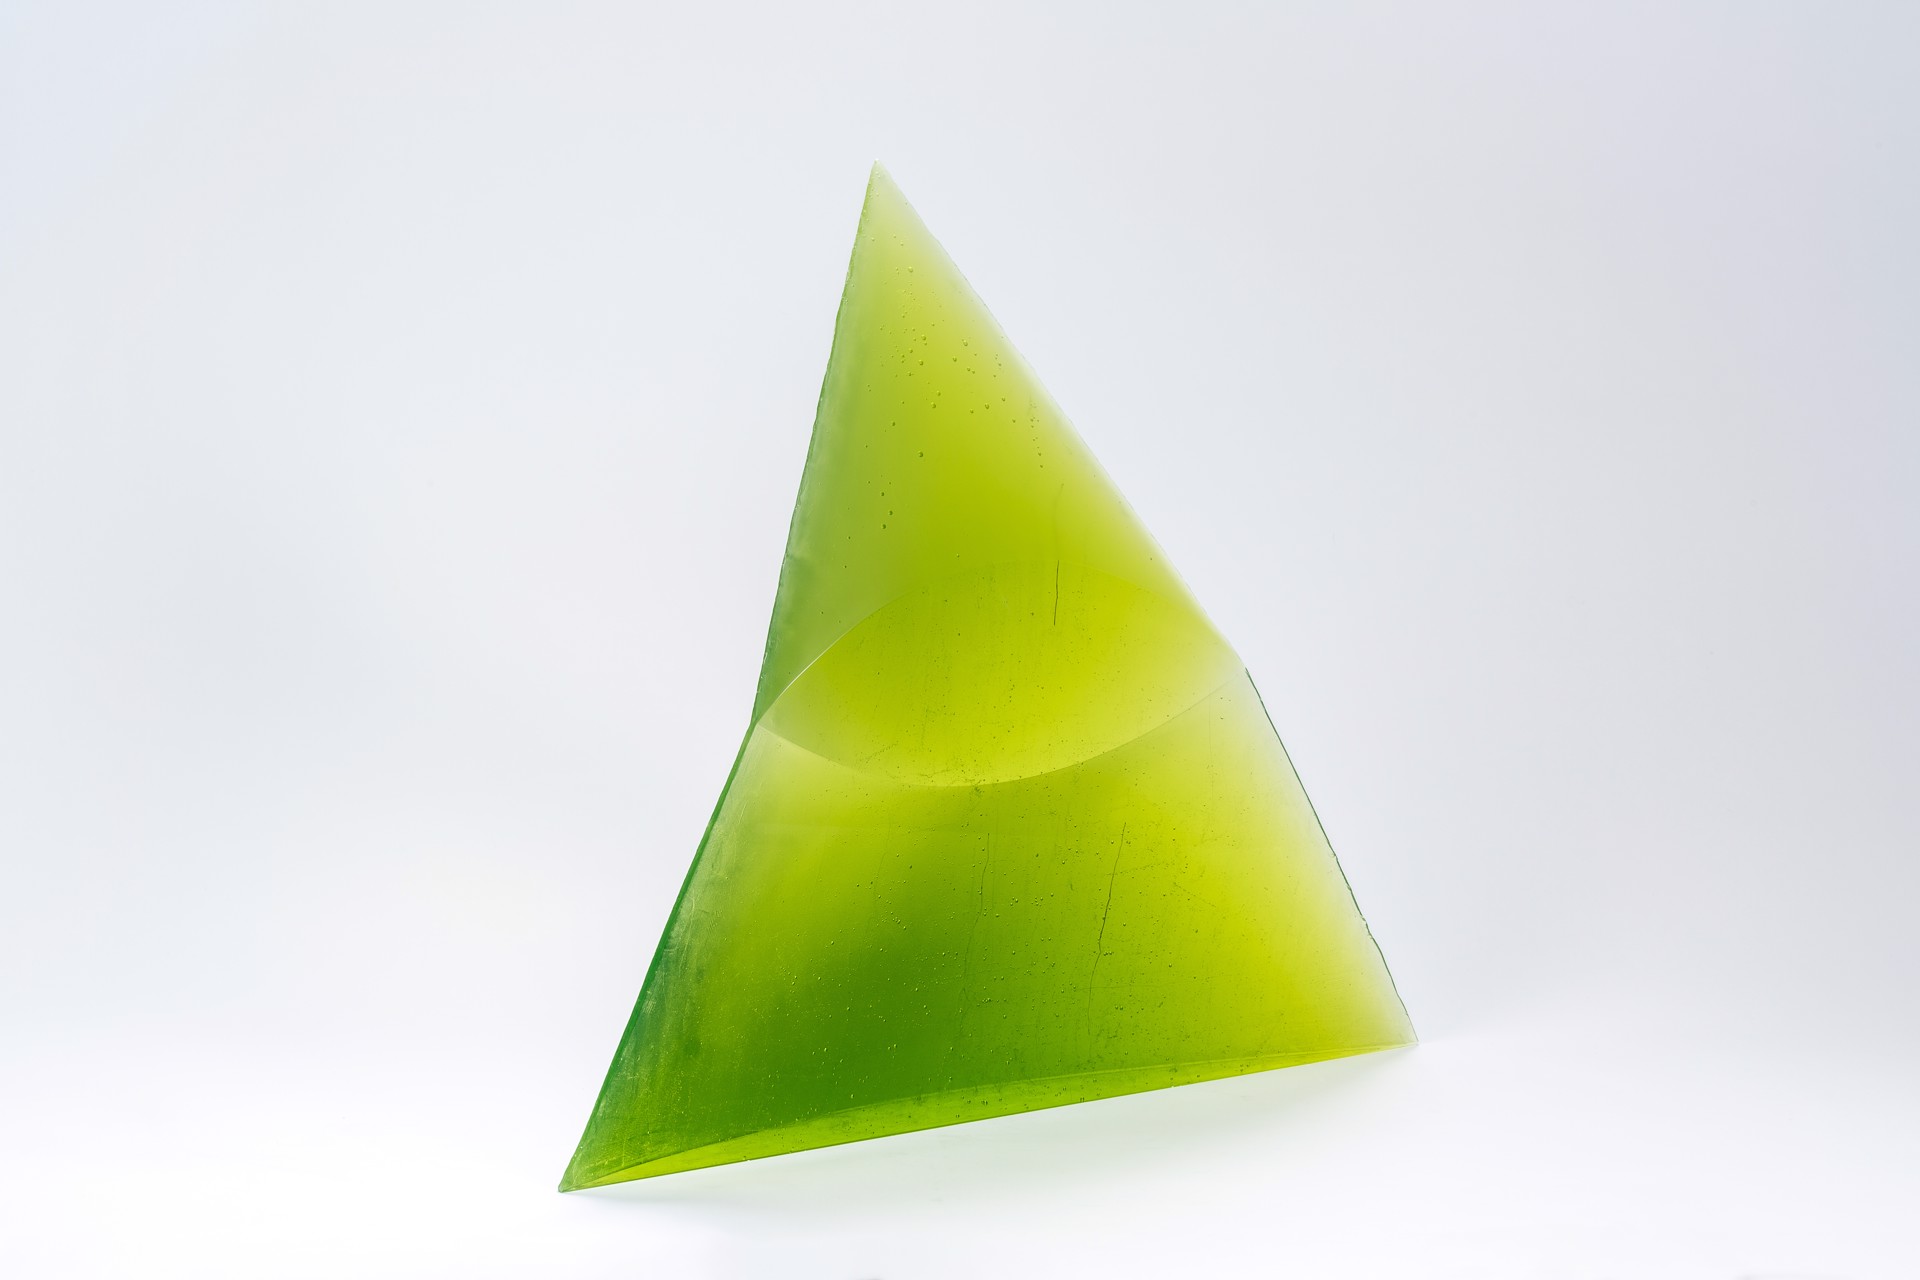 Green Eye of the Pyramid by Stanislav Libenský & Jaroslava Brychtová